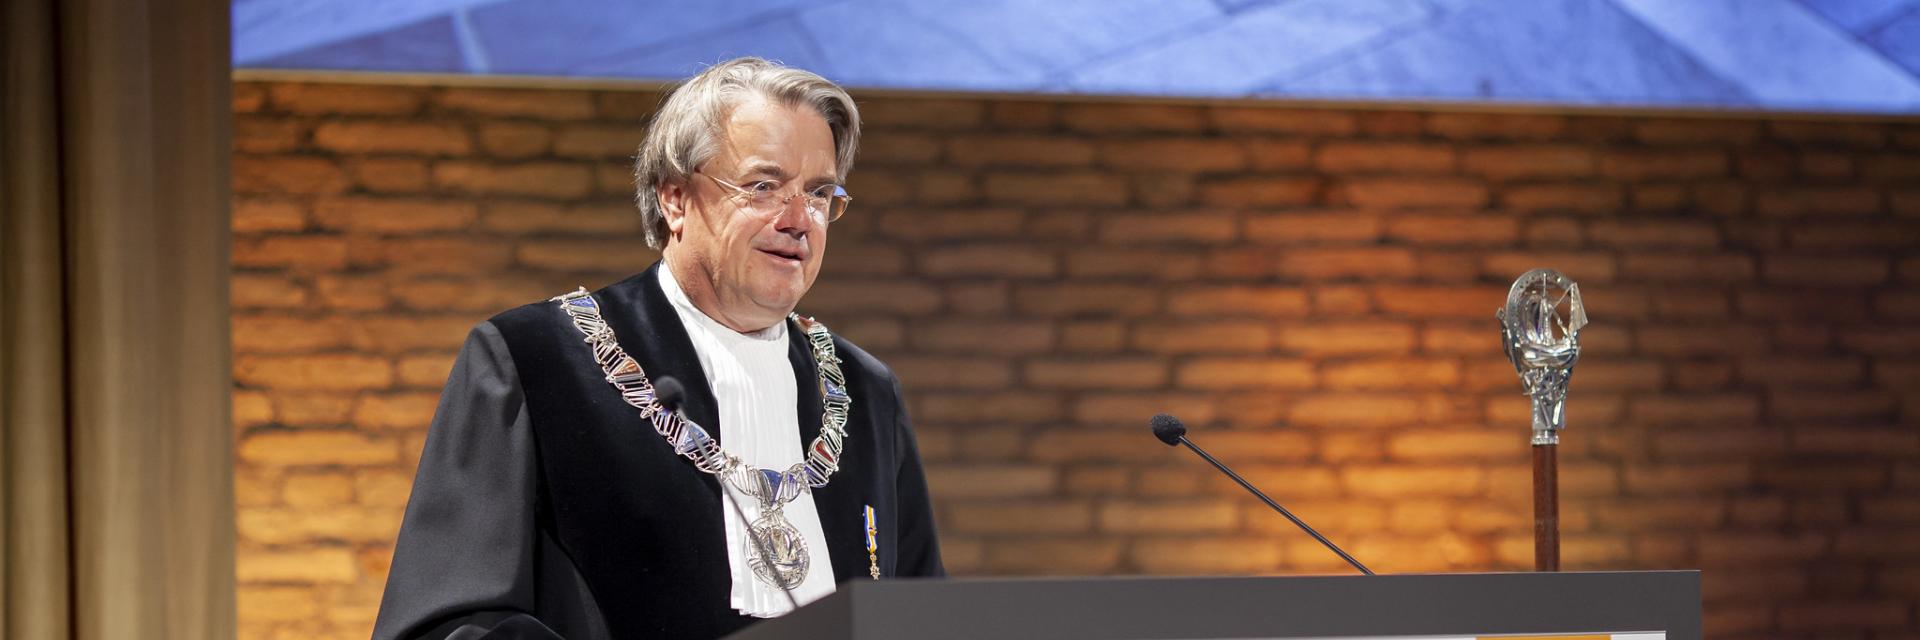 Prof. dr. Wim van de Donk